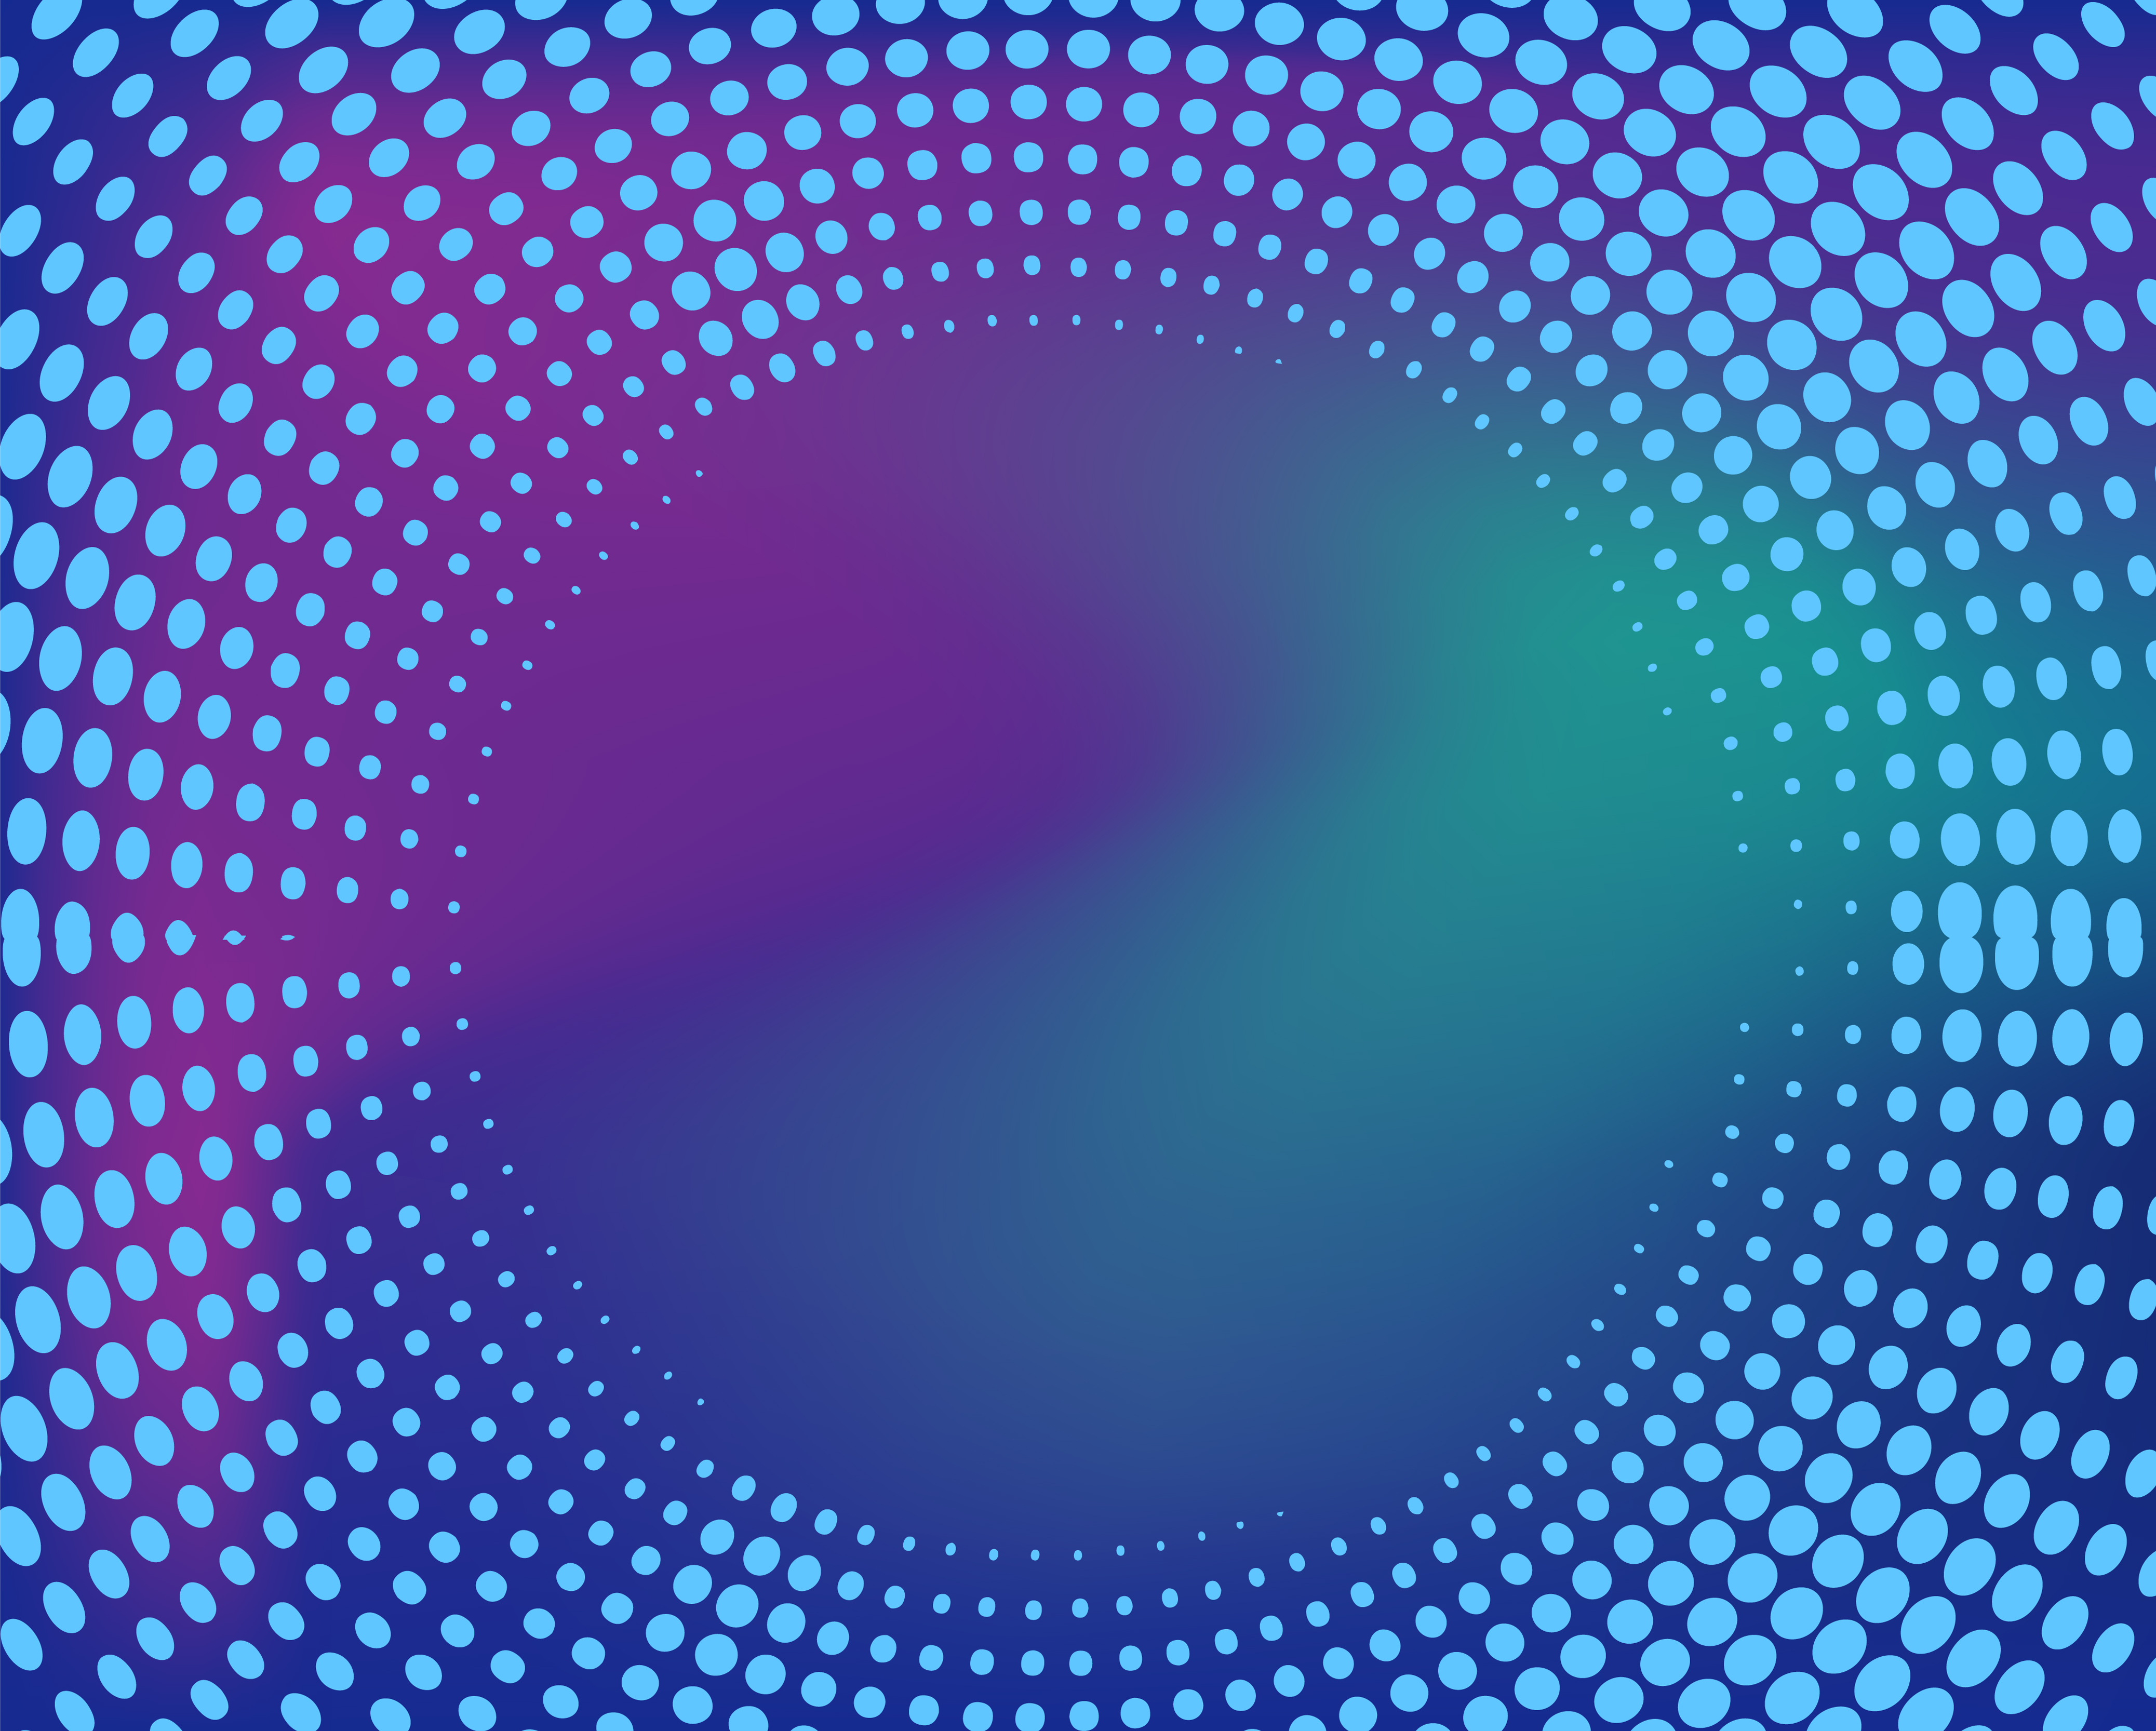 Halftone gradient dots circular frame - Download Free Vectors, Clipart